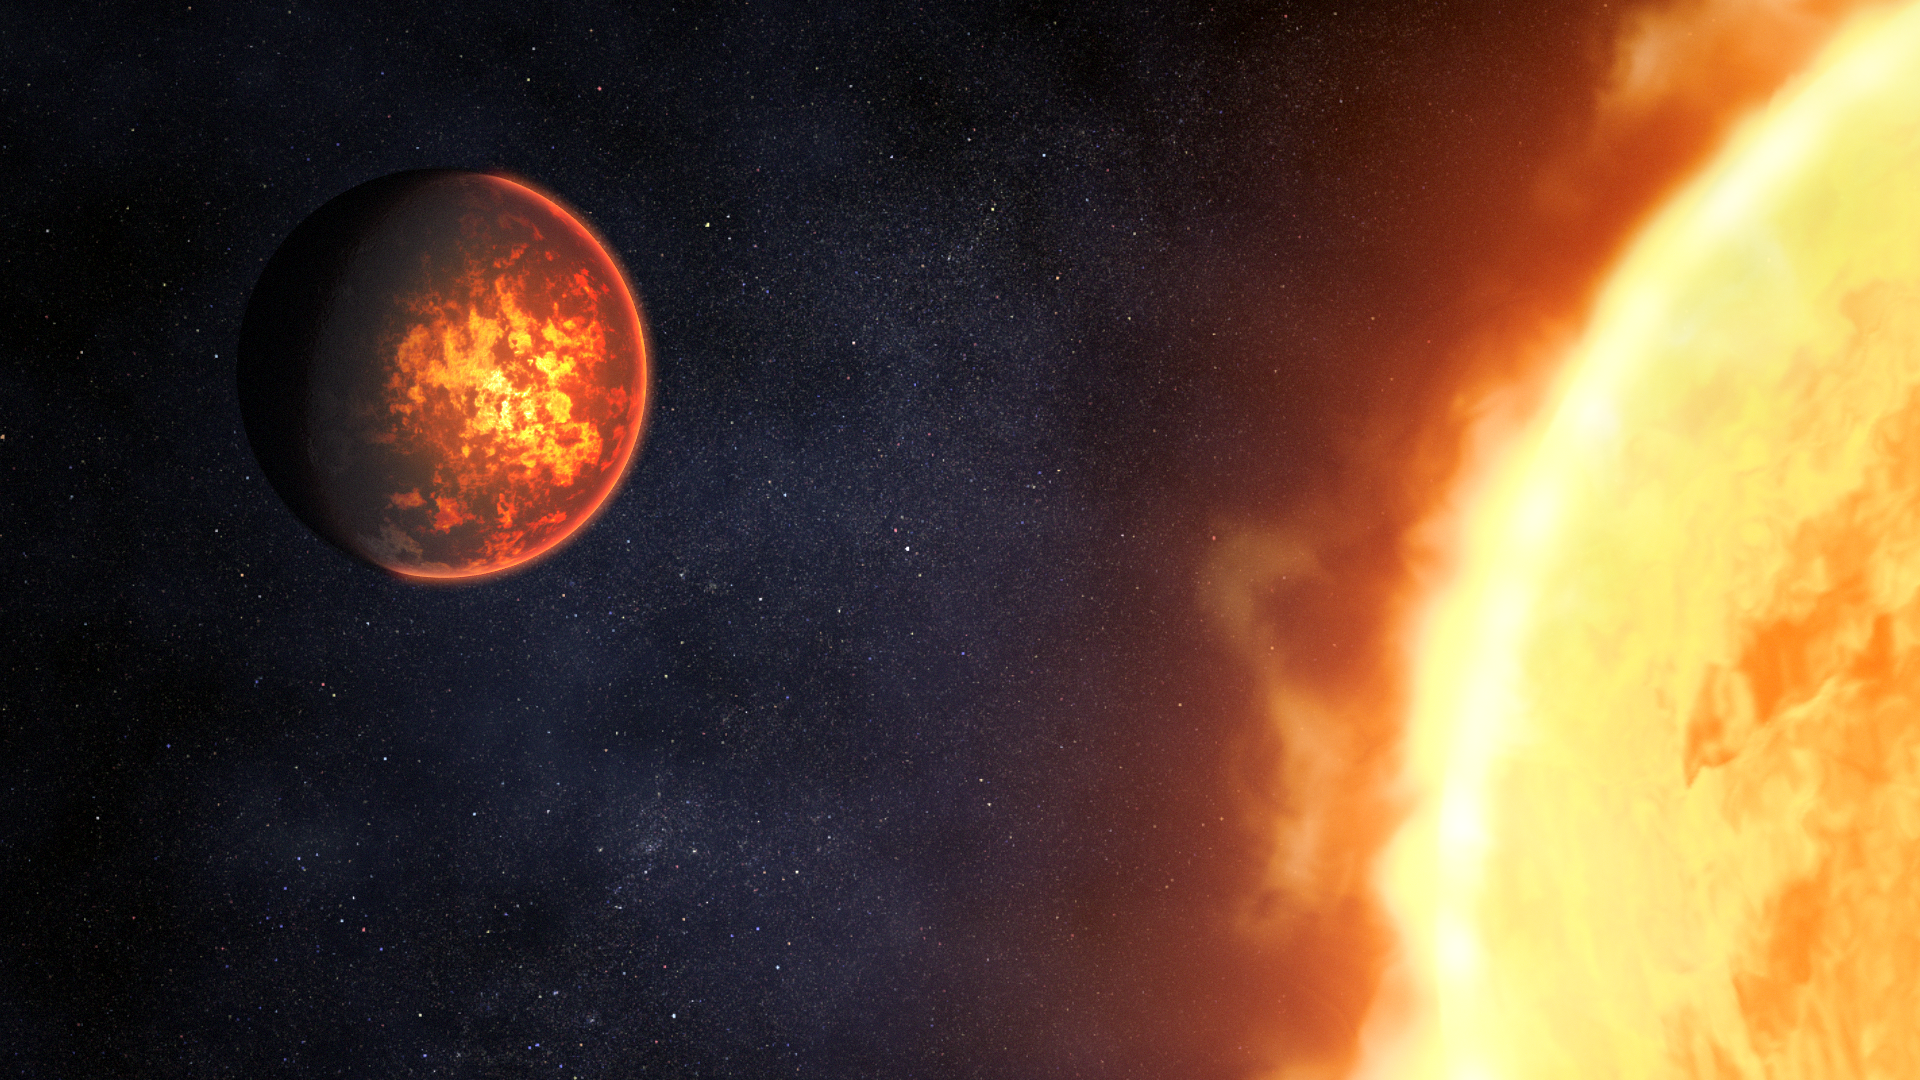 Une vue d'artiste montrant à quoi pourrait ressembler l'exoplanète 55 Cancri e, basée sur notre compréhension actuelle de la planète. 55 Cancri e est une planète rocheuse dont le diamètre est presque le double de celui de la Terre et qui orbite à seulement 0,015 unité astronomique de son étoile semblable au Soleil. En raison de son orbite rapprochée, la planète est extrêmement chaude, avec des températures diurnes atteignant environ 2.400 degrés Celsius.&nbsp;© Nasa, ESA, CSA, Dani Player (STScI)